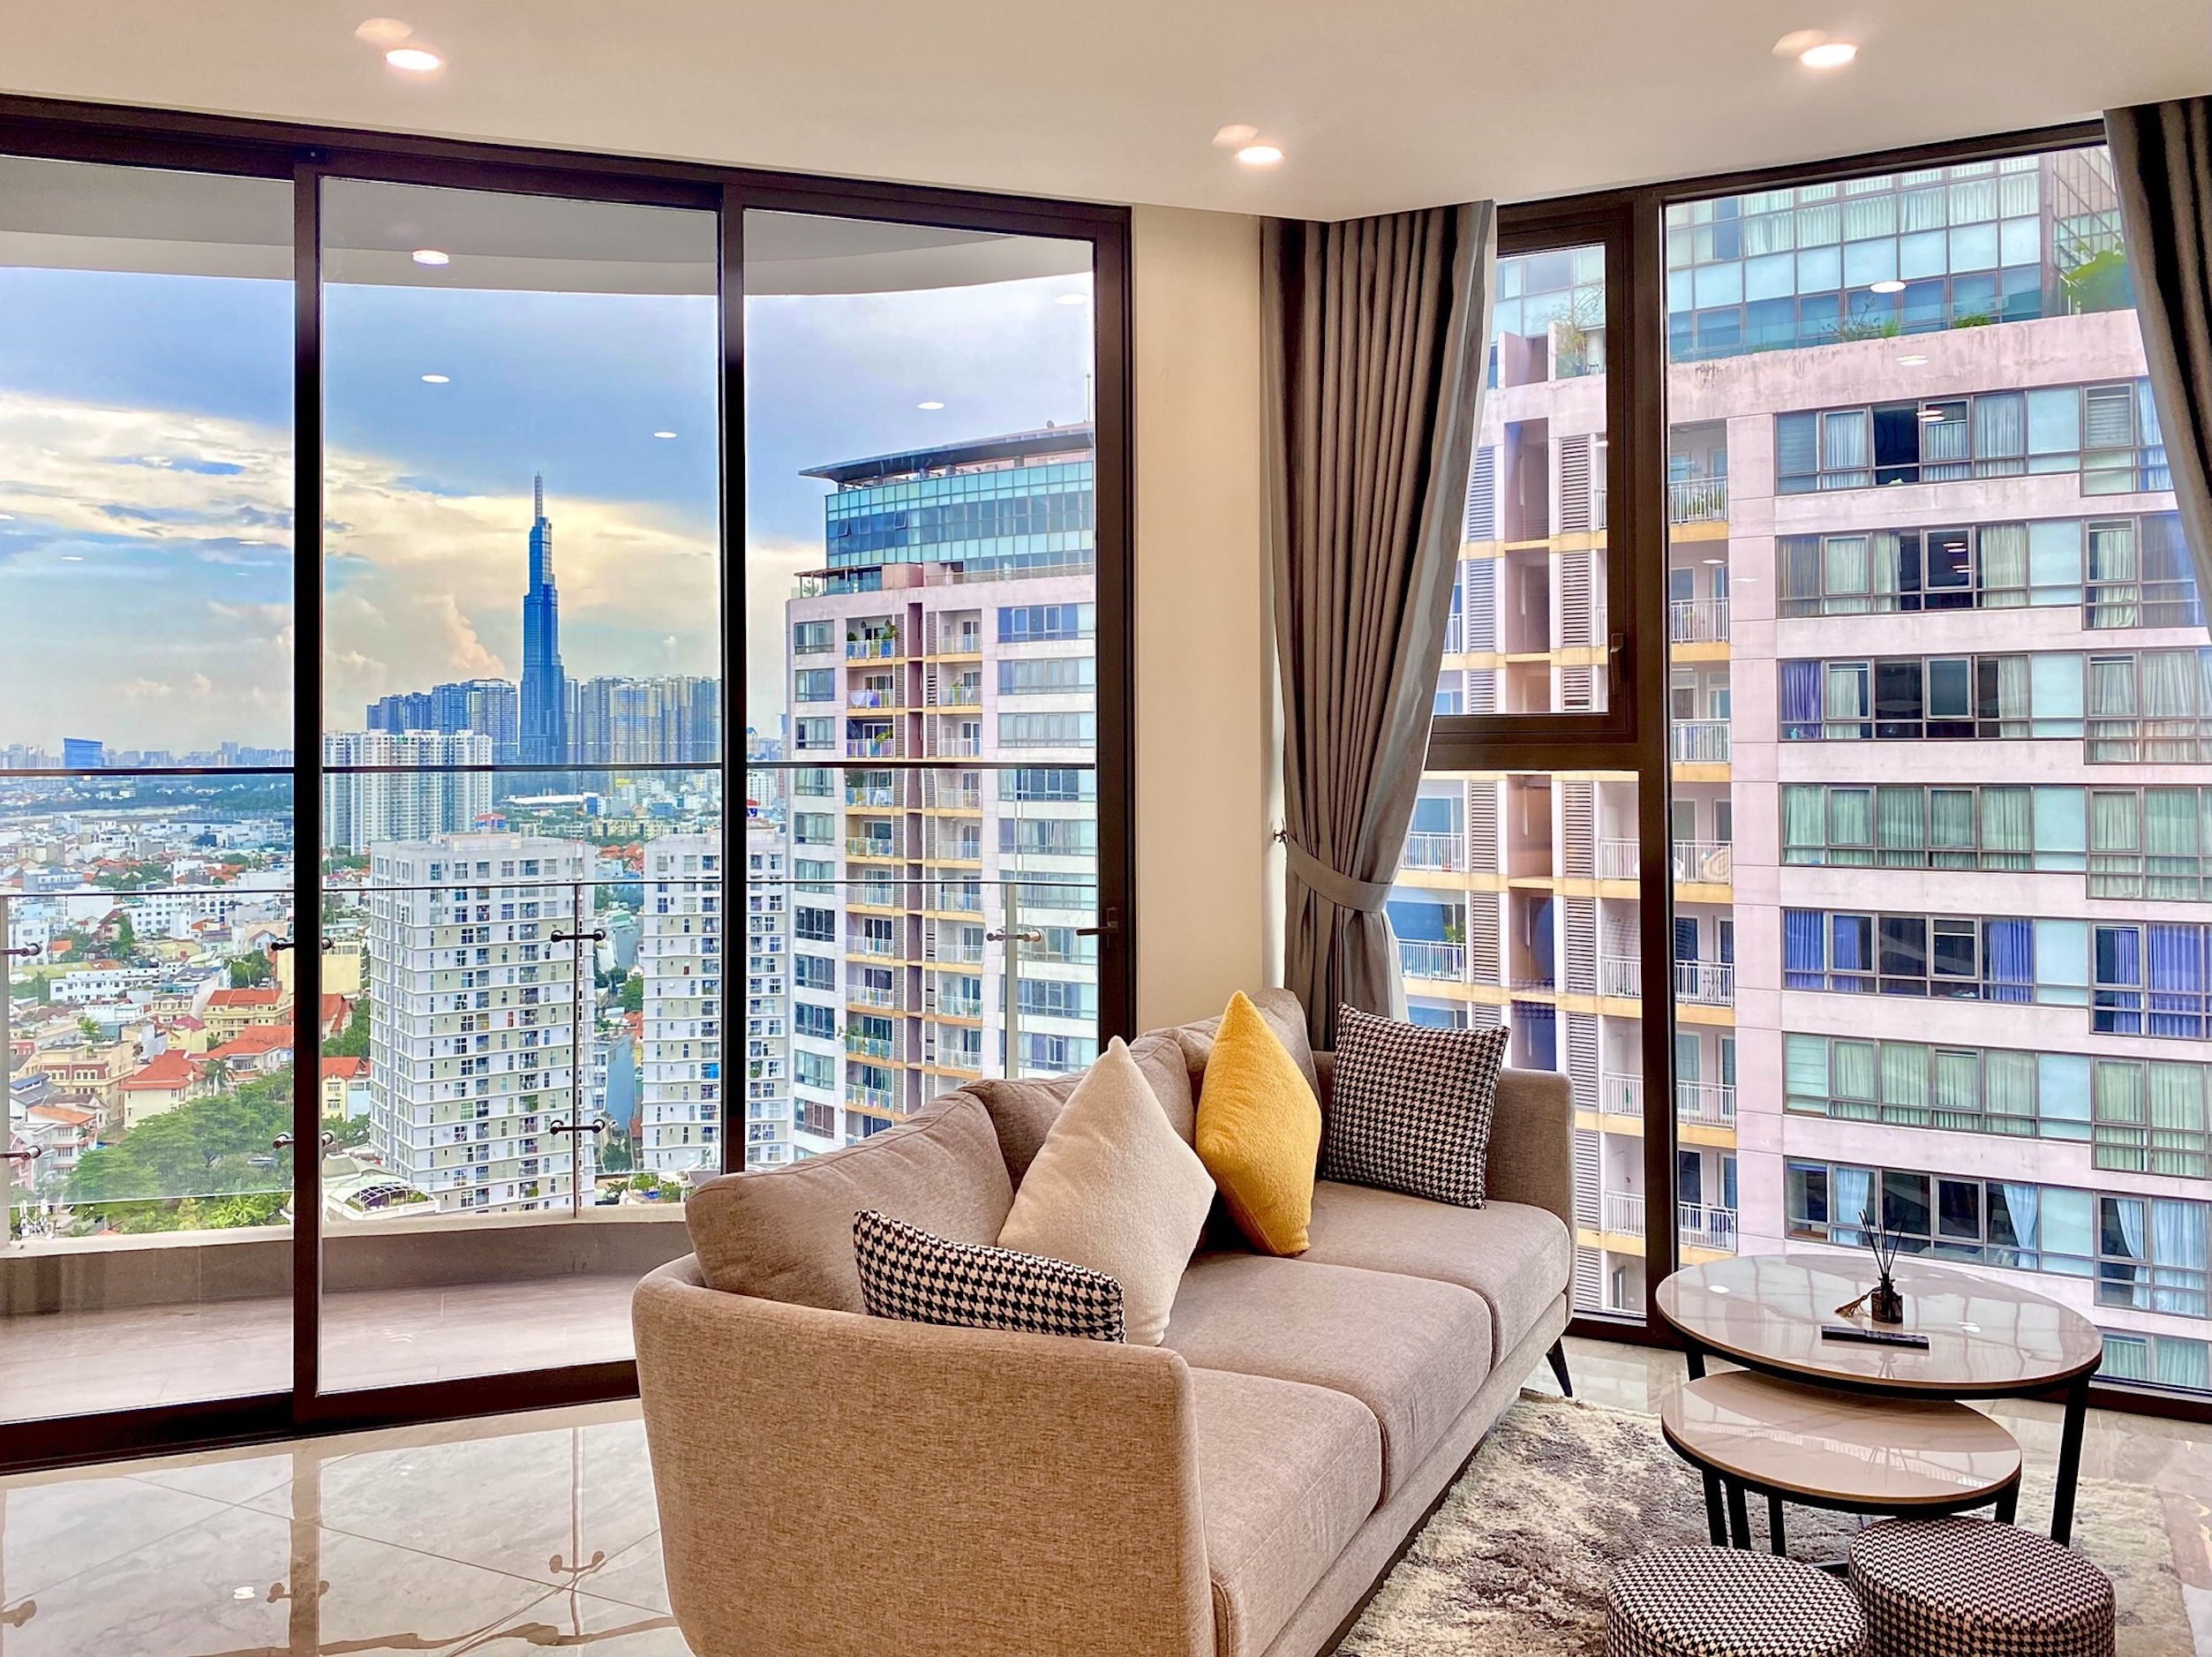 Cho thuê căn hộ 1 phòng ngủ Thảo Điền Green, 55m2, full nội thất cao cấp, tầng cao view LM81, giá thuê 26 triệu 1 tháng